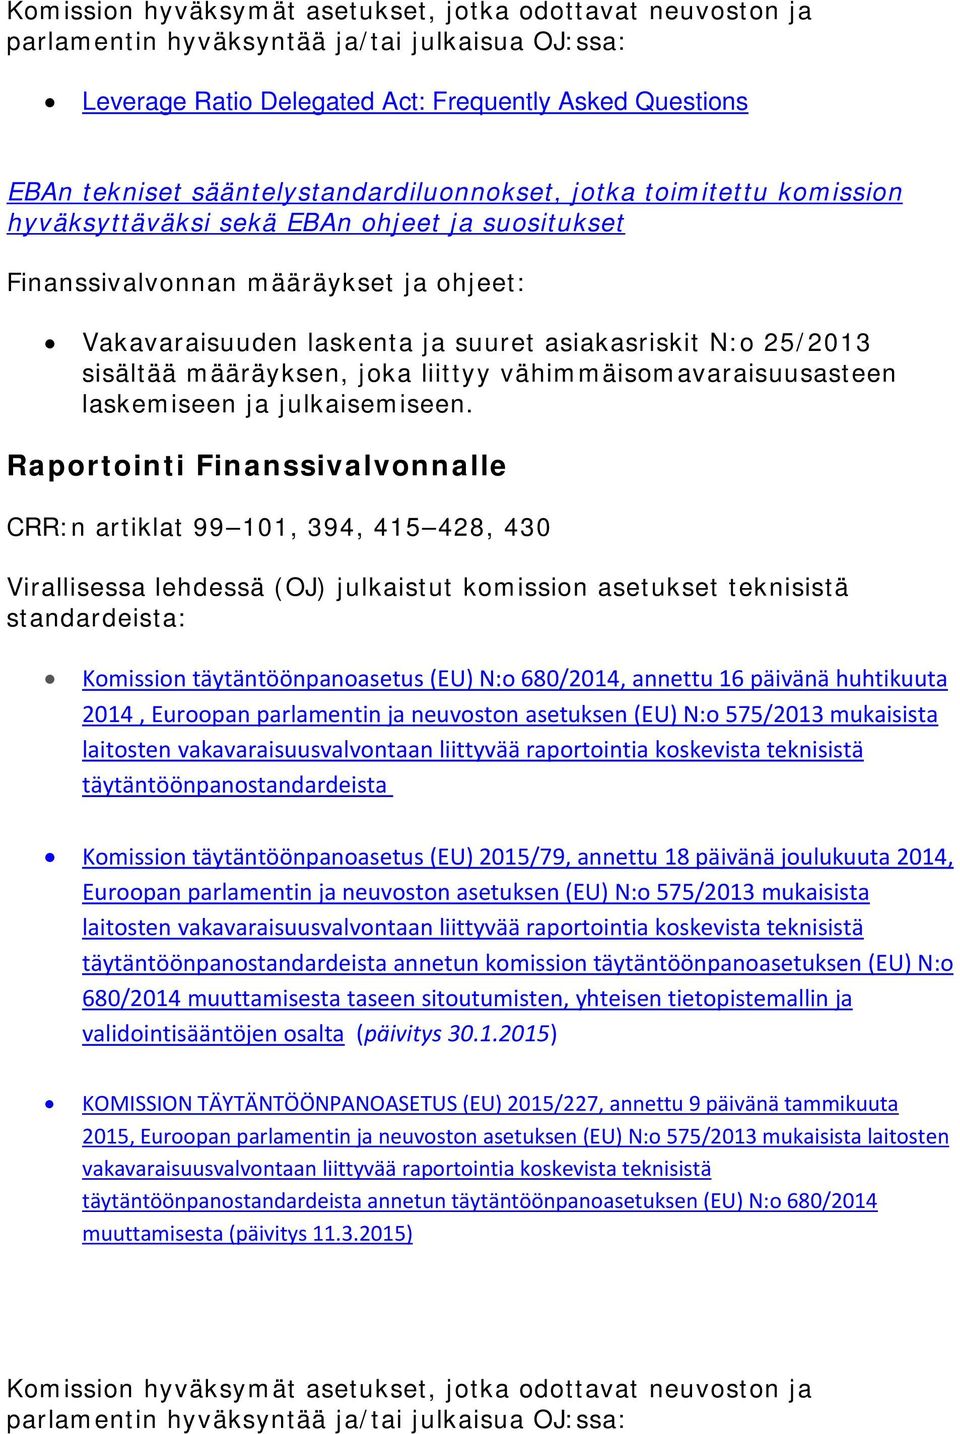 asetuksen (EU) N:o 575/2013 mukaisista laitosten vakavaraisuusvalvontaan liittyvää raportointia koskevista teknisistä täytäntöönpanostandardeista Komission täytäntöönpanoasetus (EU) 2015/79, annettu